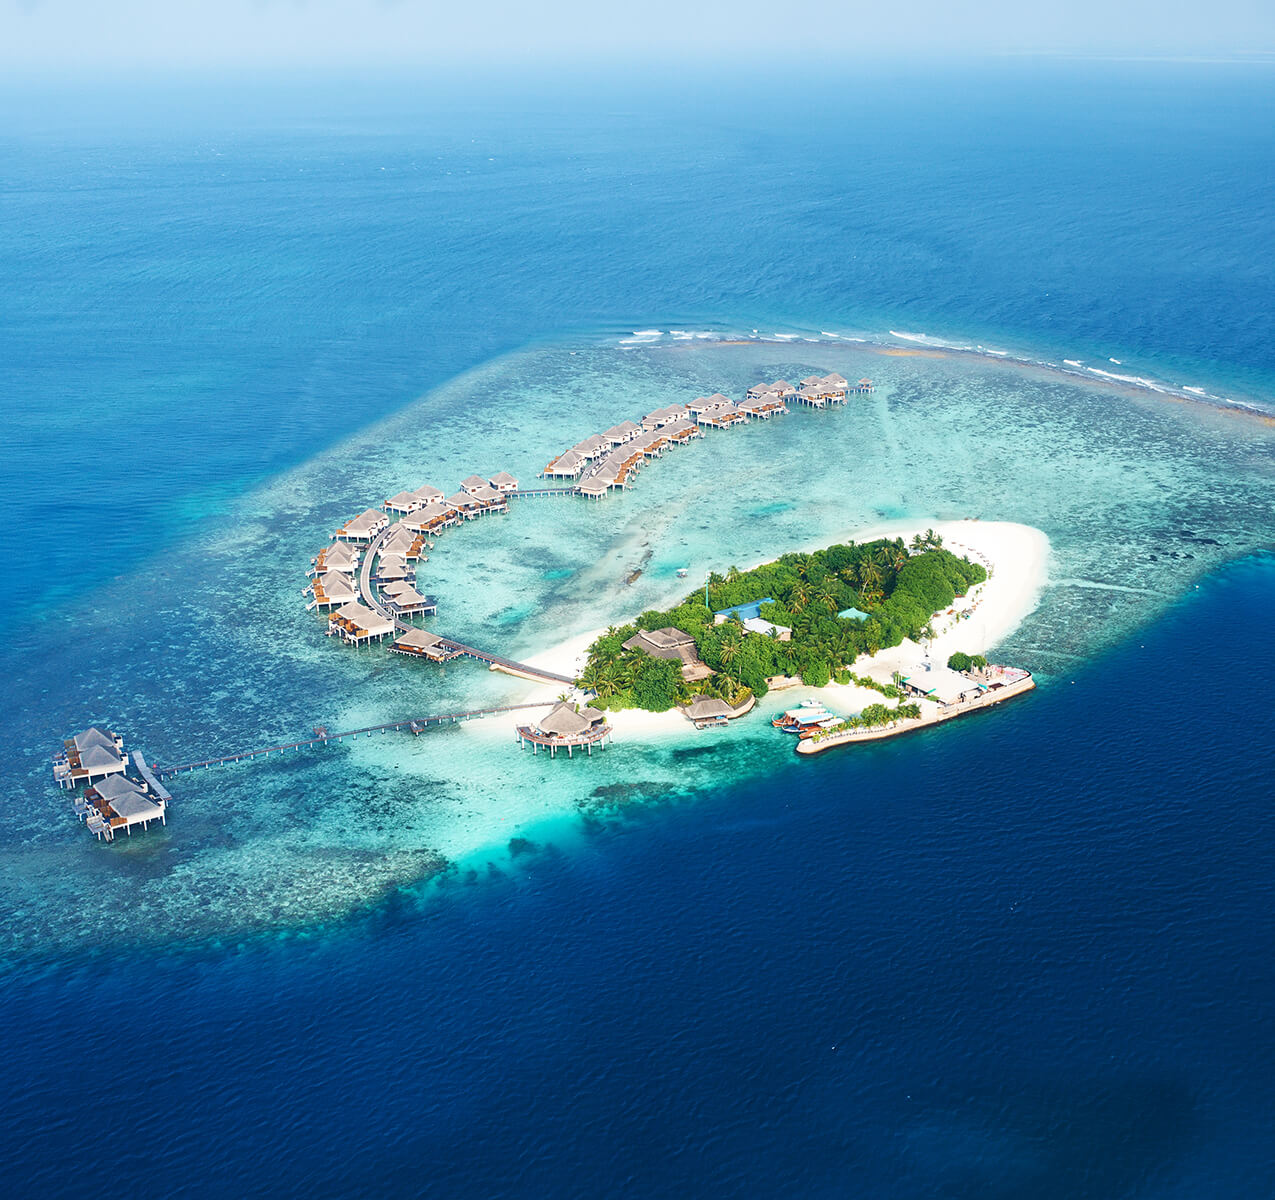 maldives private island